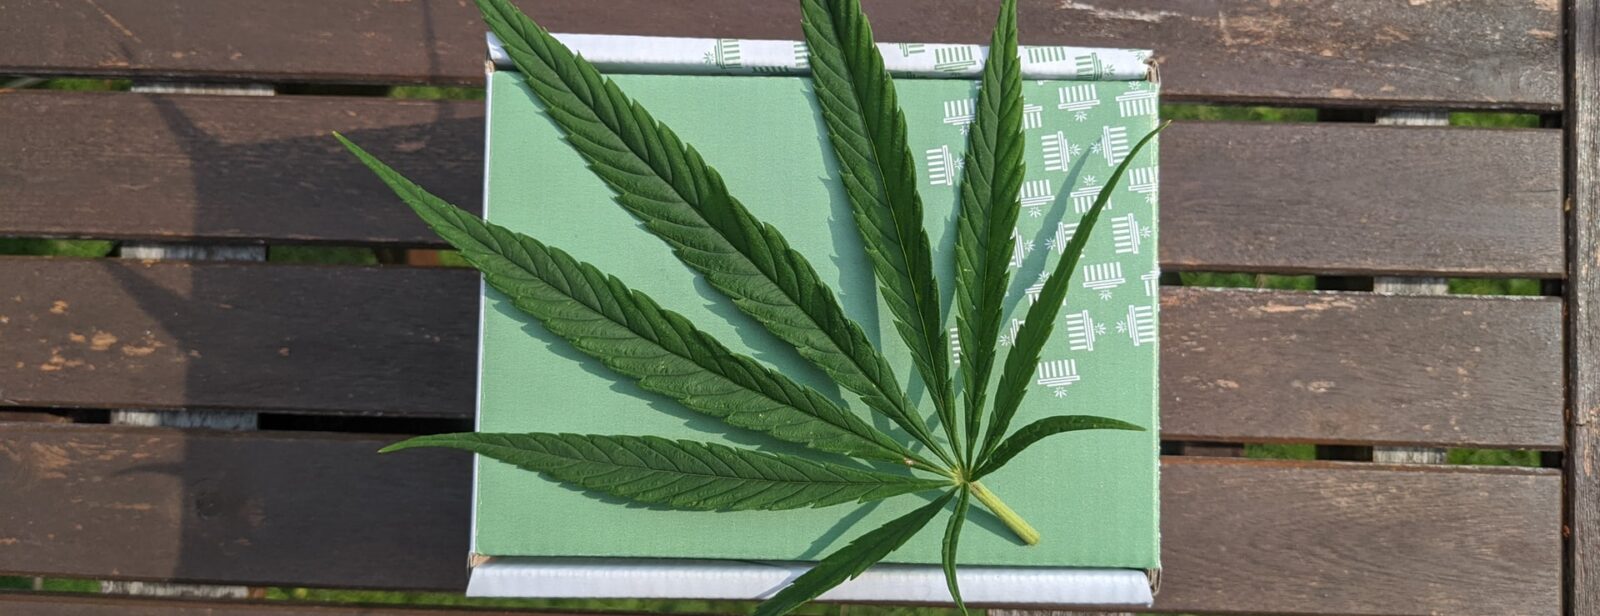 DUI and medical marijuana